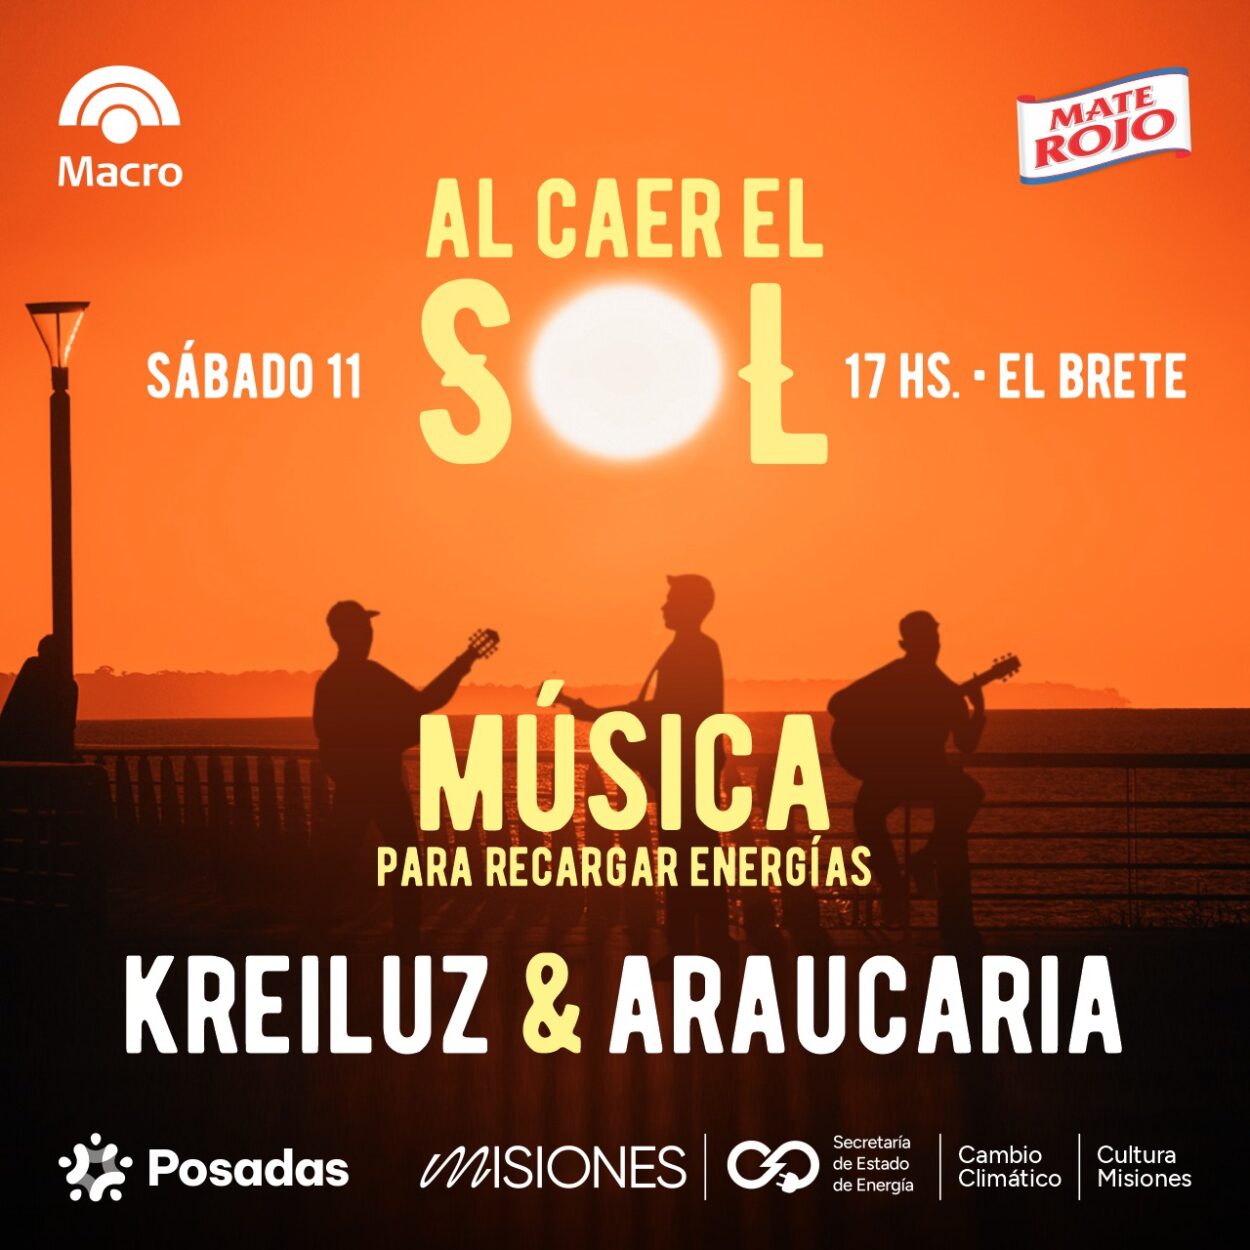 Araucaria y Kreiluz aportarán su energía musical este sábado en El Brete imagen-59